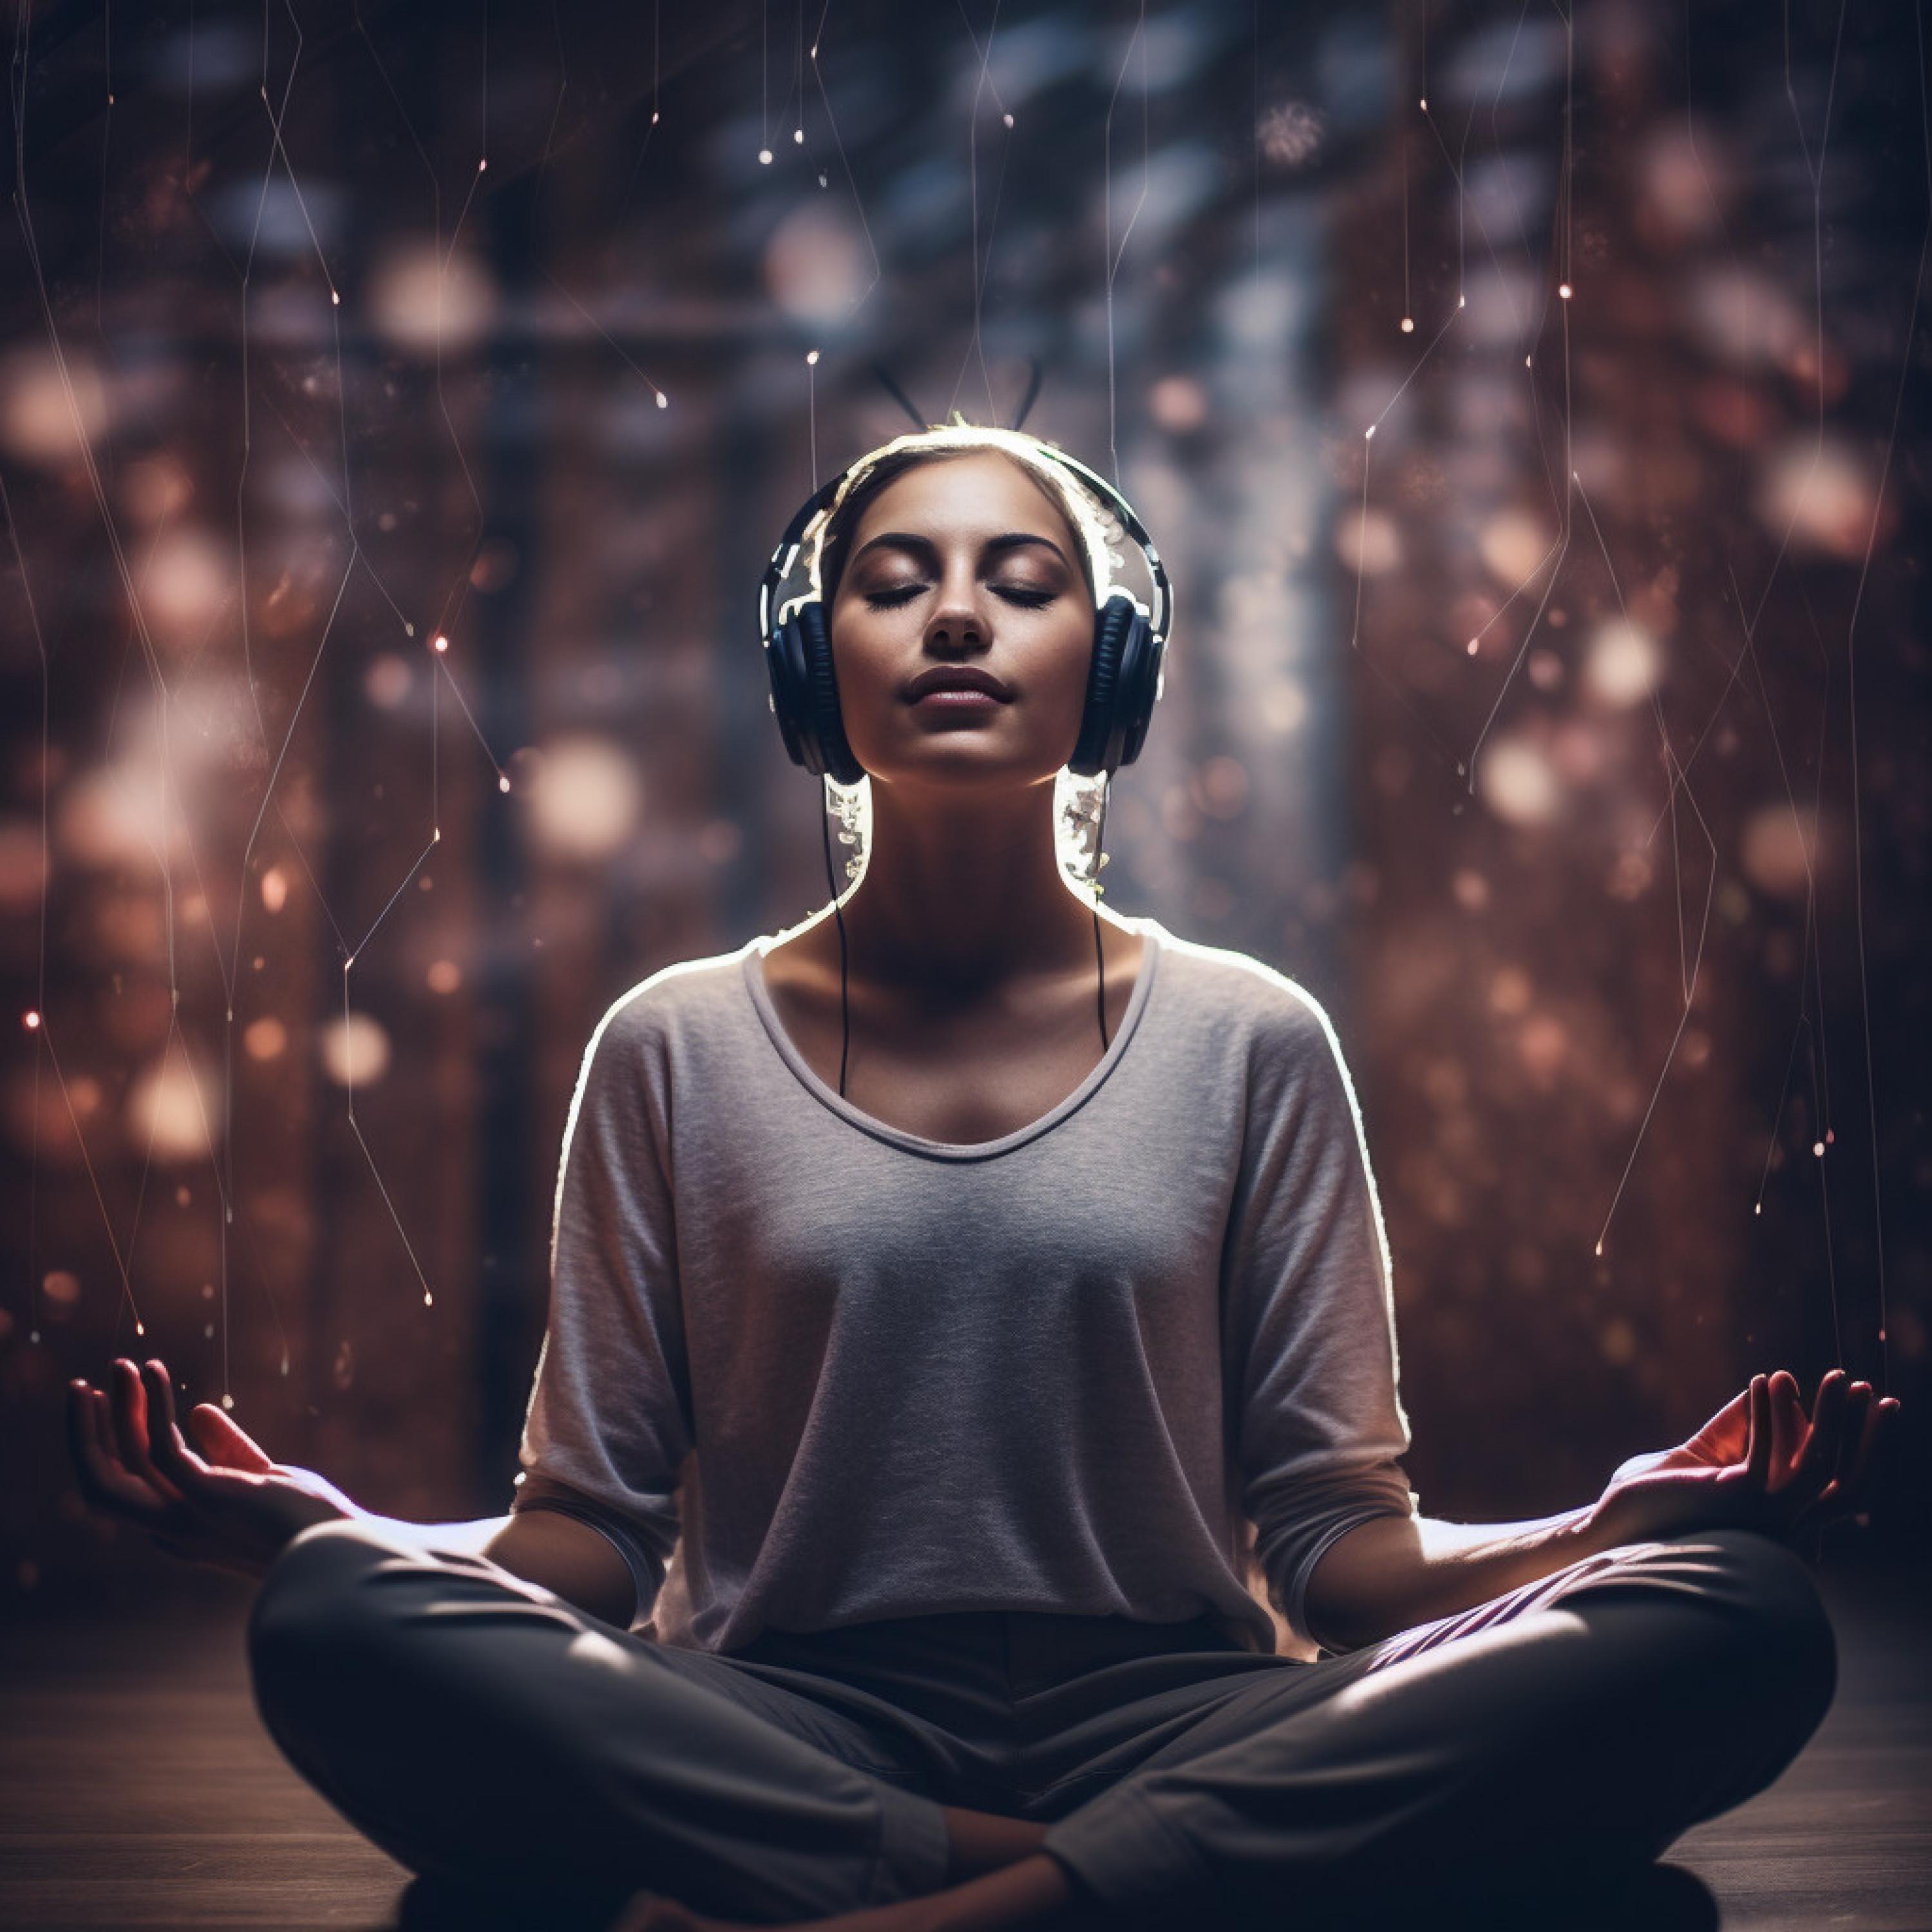 Yoga Radiance - Meditation Yoga Harmony